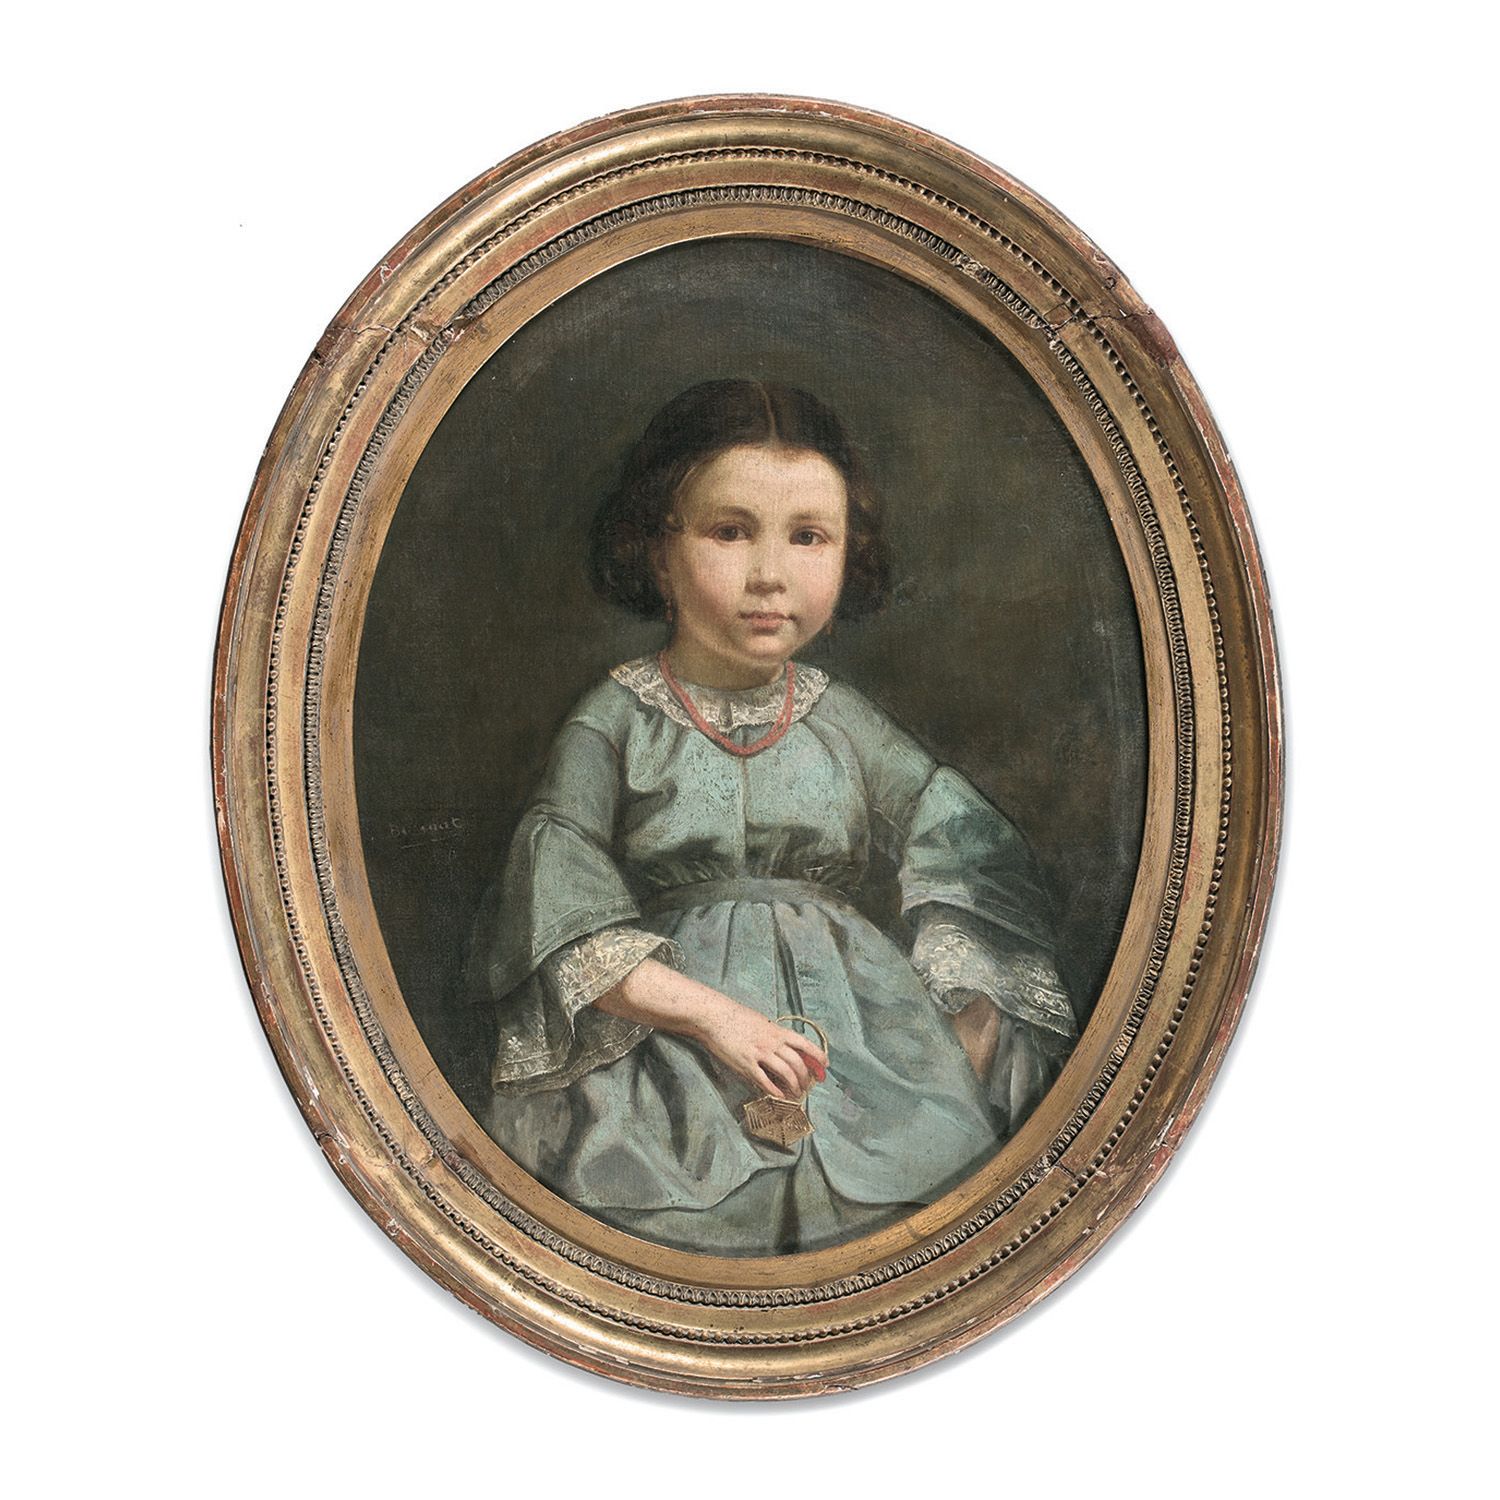 Null 19世纪法国画家莱昂-邦纳特的作品
穿着蓝色衣服的年轻女孩的肖像
椭圆形画布
修复
19世纪法国画派，L.Bonnat的圈子，穿着蓝色衣服的年轻女孩的&hellip;